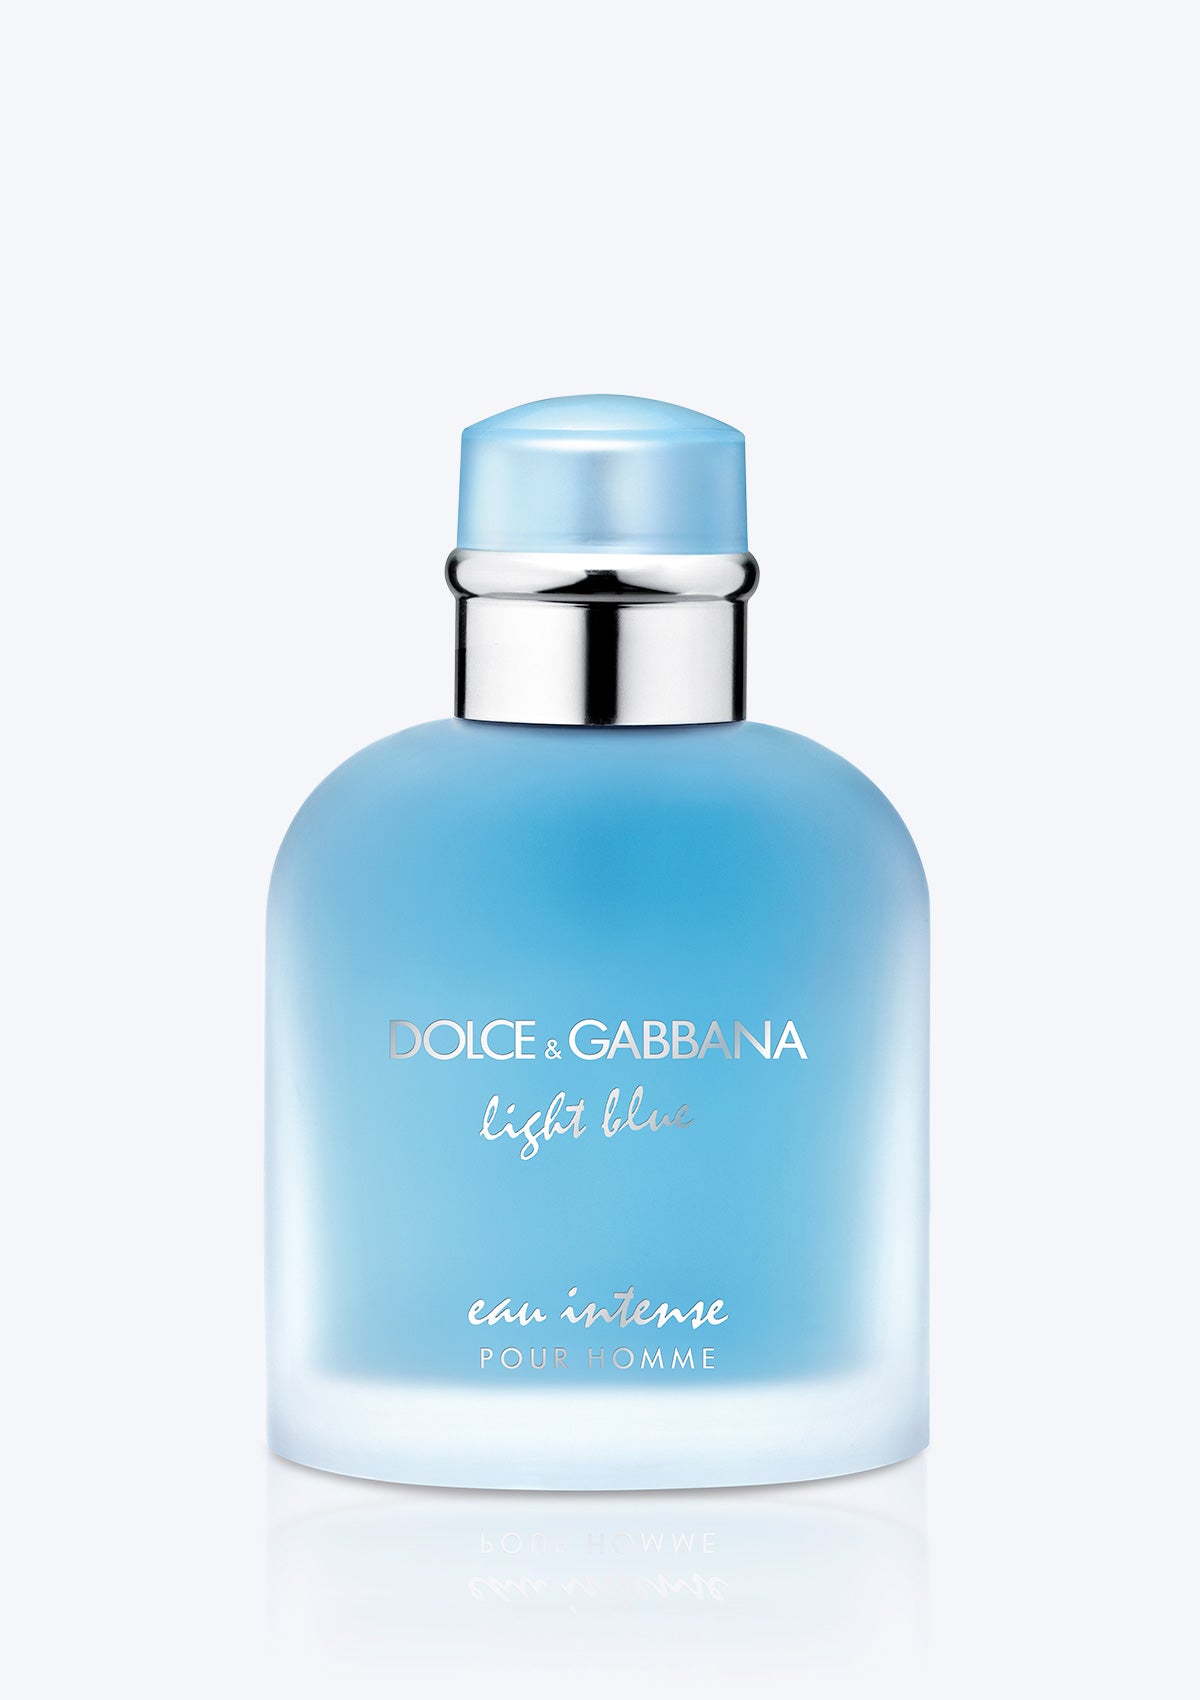 DOLCE & GABBANA Light Blue Eau Intense Pour Homme EDP – Paris France Beauty